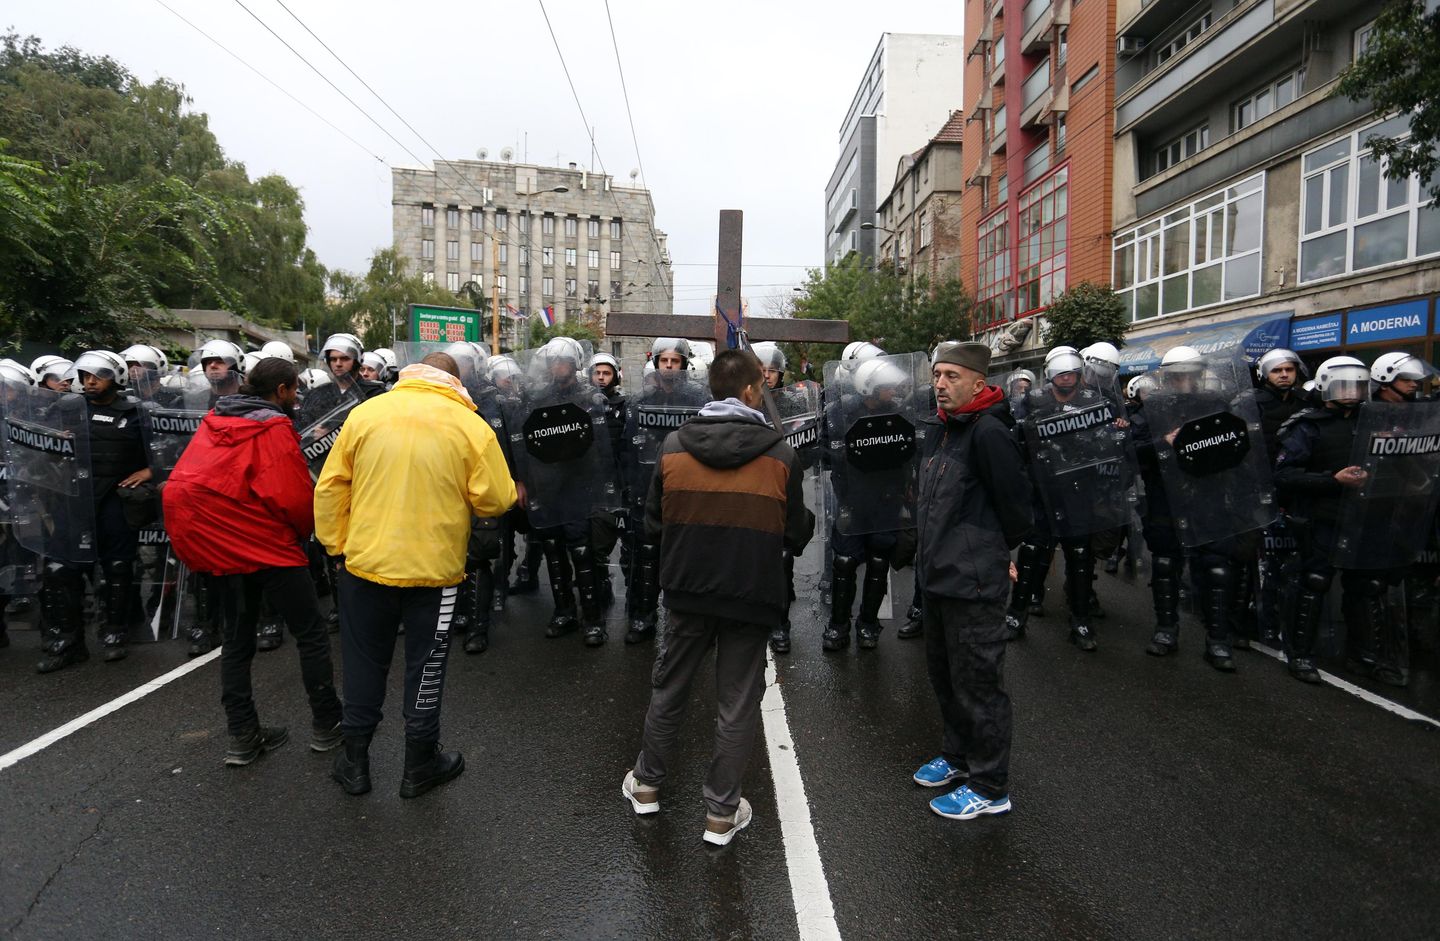 Belgrad polisi Onur Yürüyüşü sırasında holiganlarla çatıştı